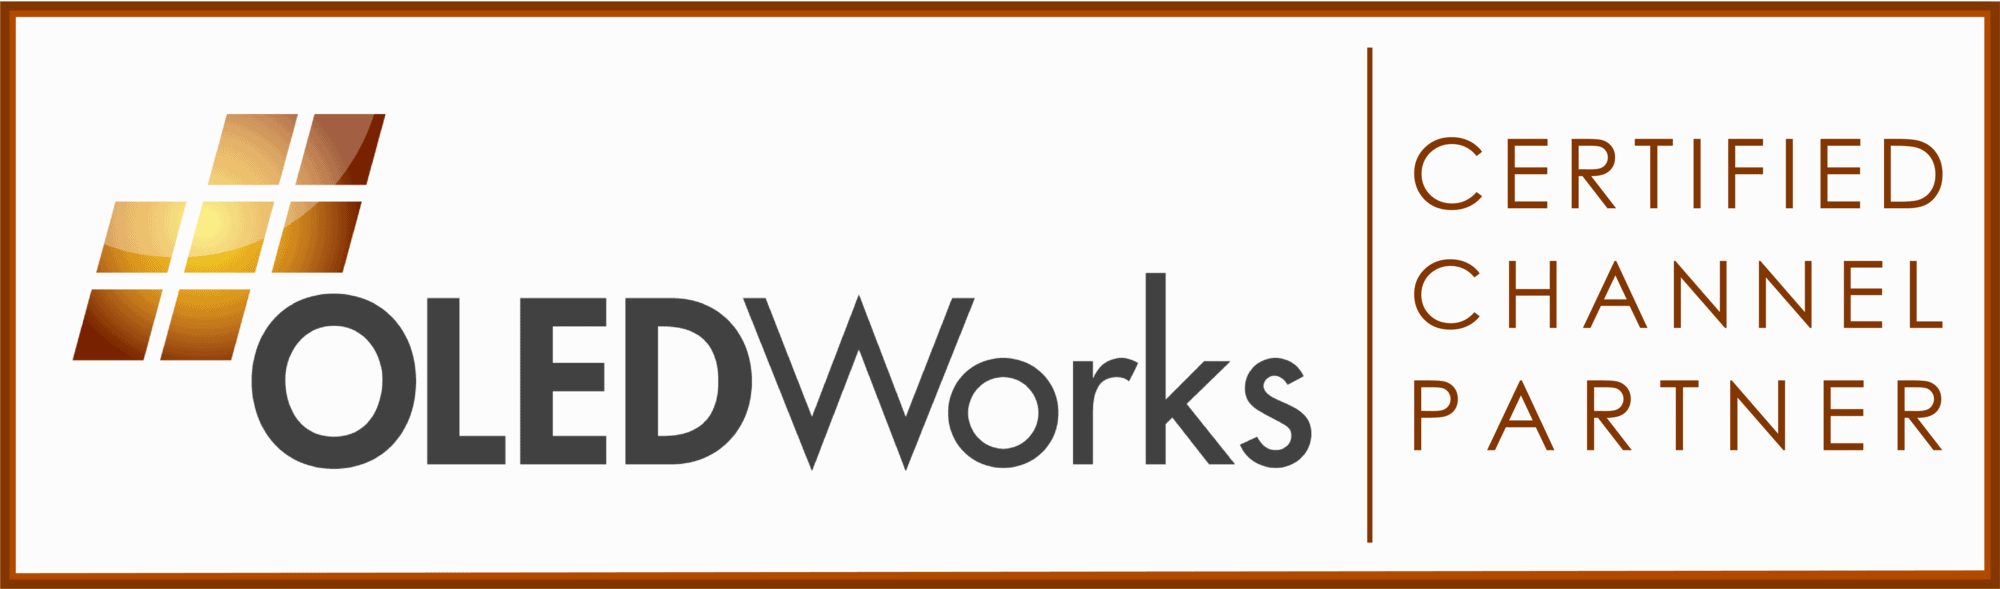 OLEDWorks Channel Partner Program